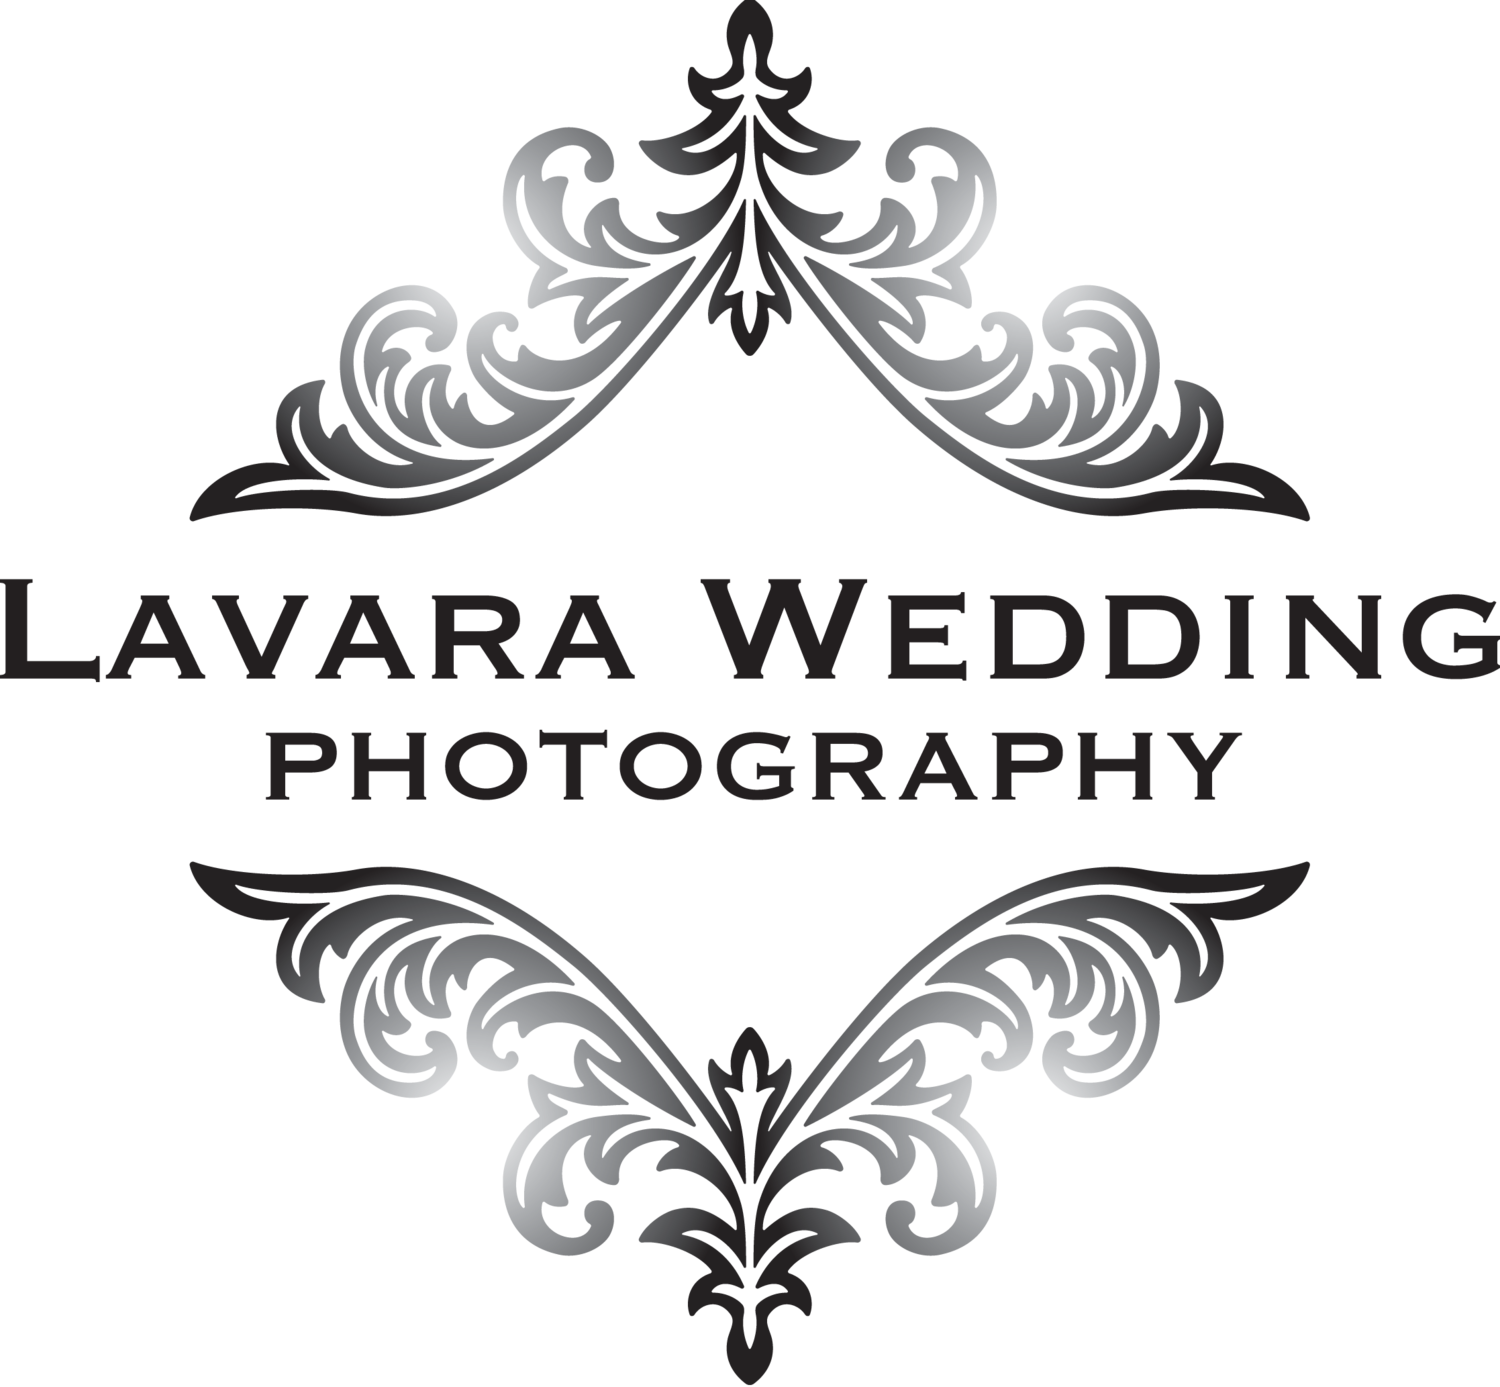 Lavara: Waiheke Wedding Photography 